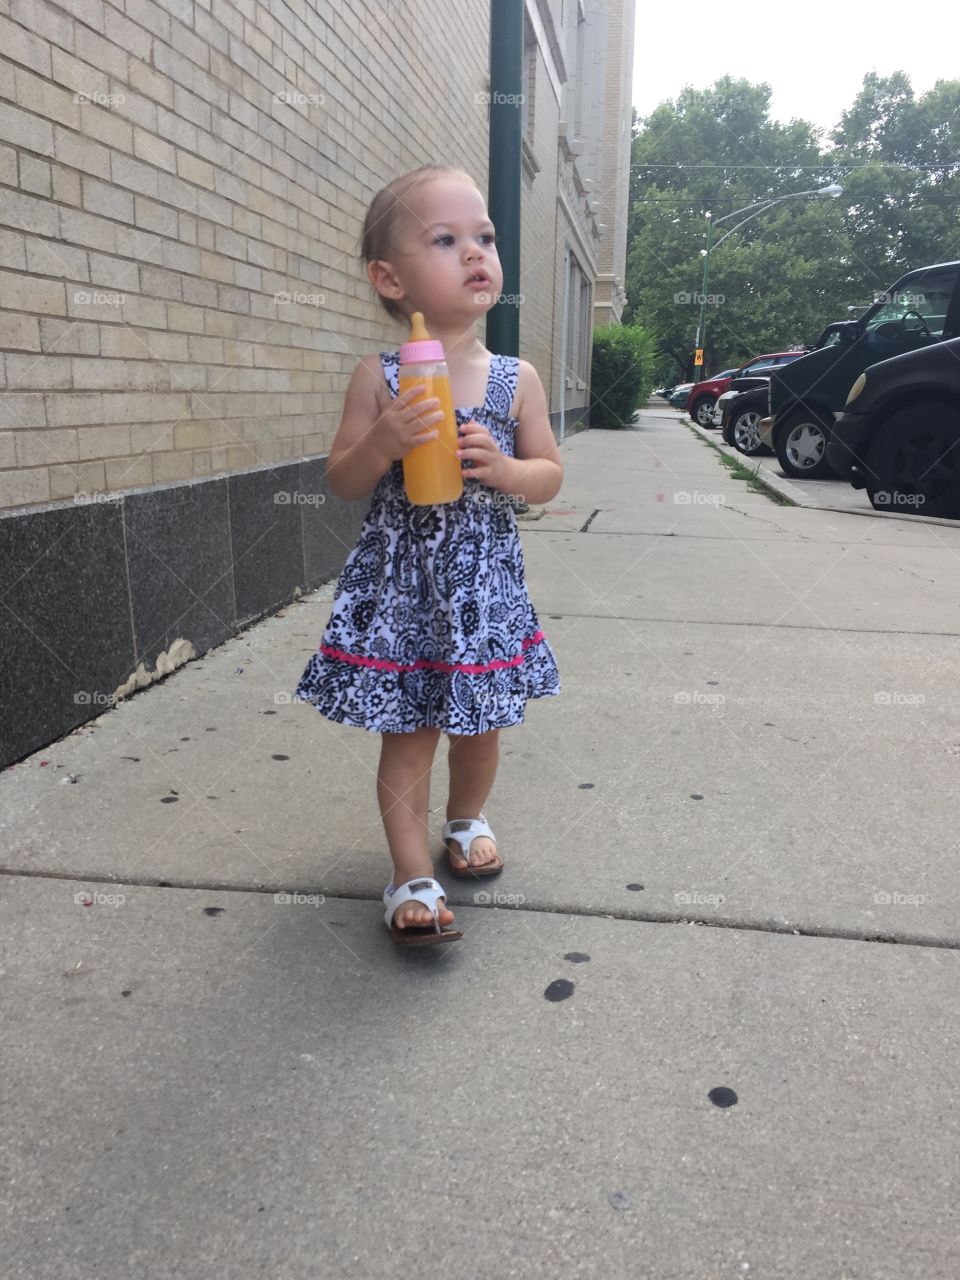 Toddler drinking juice